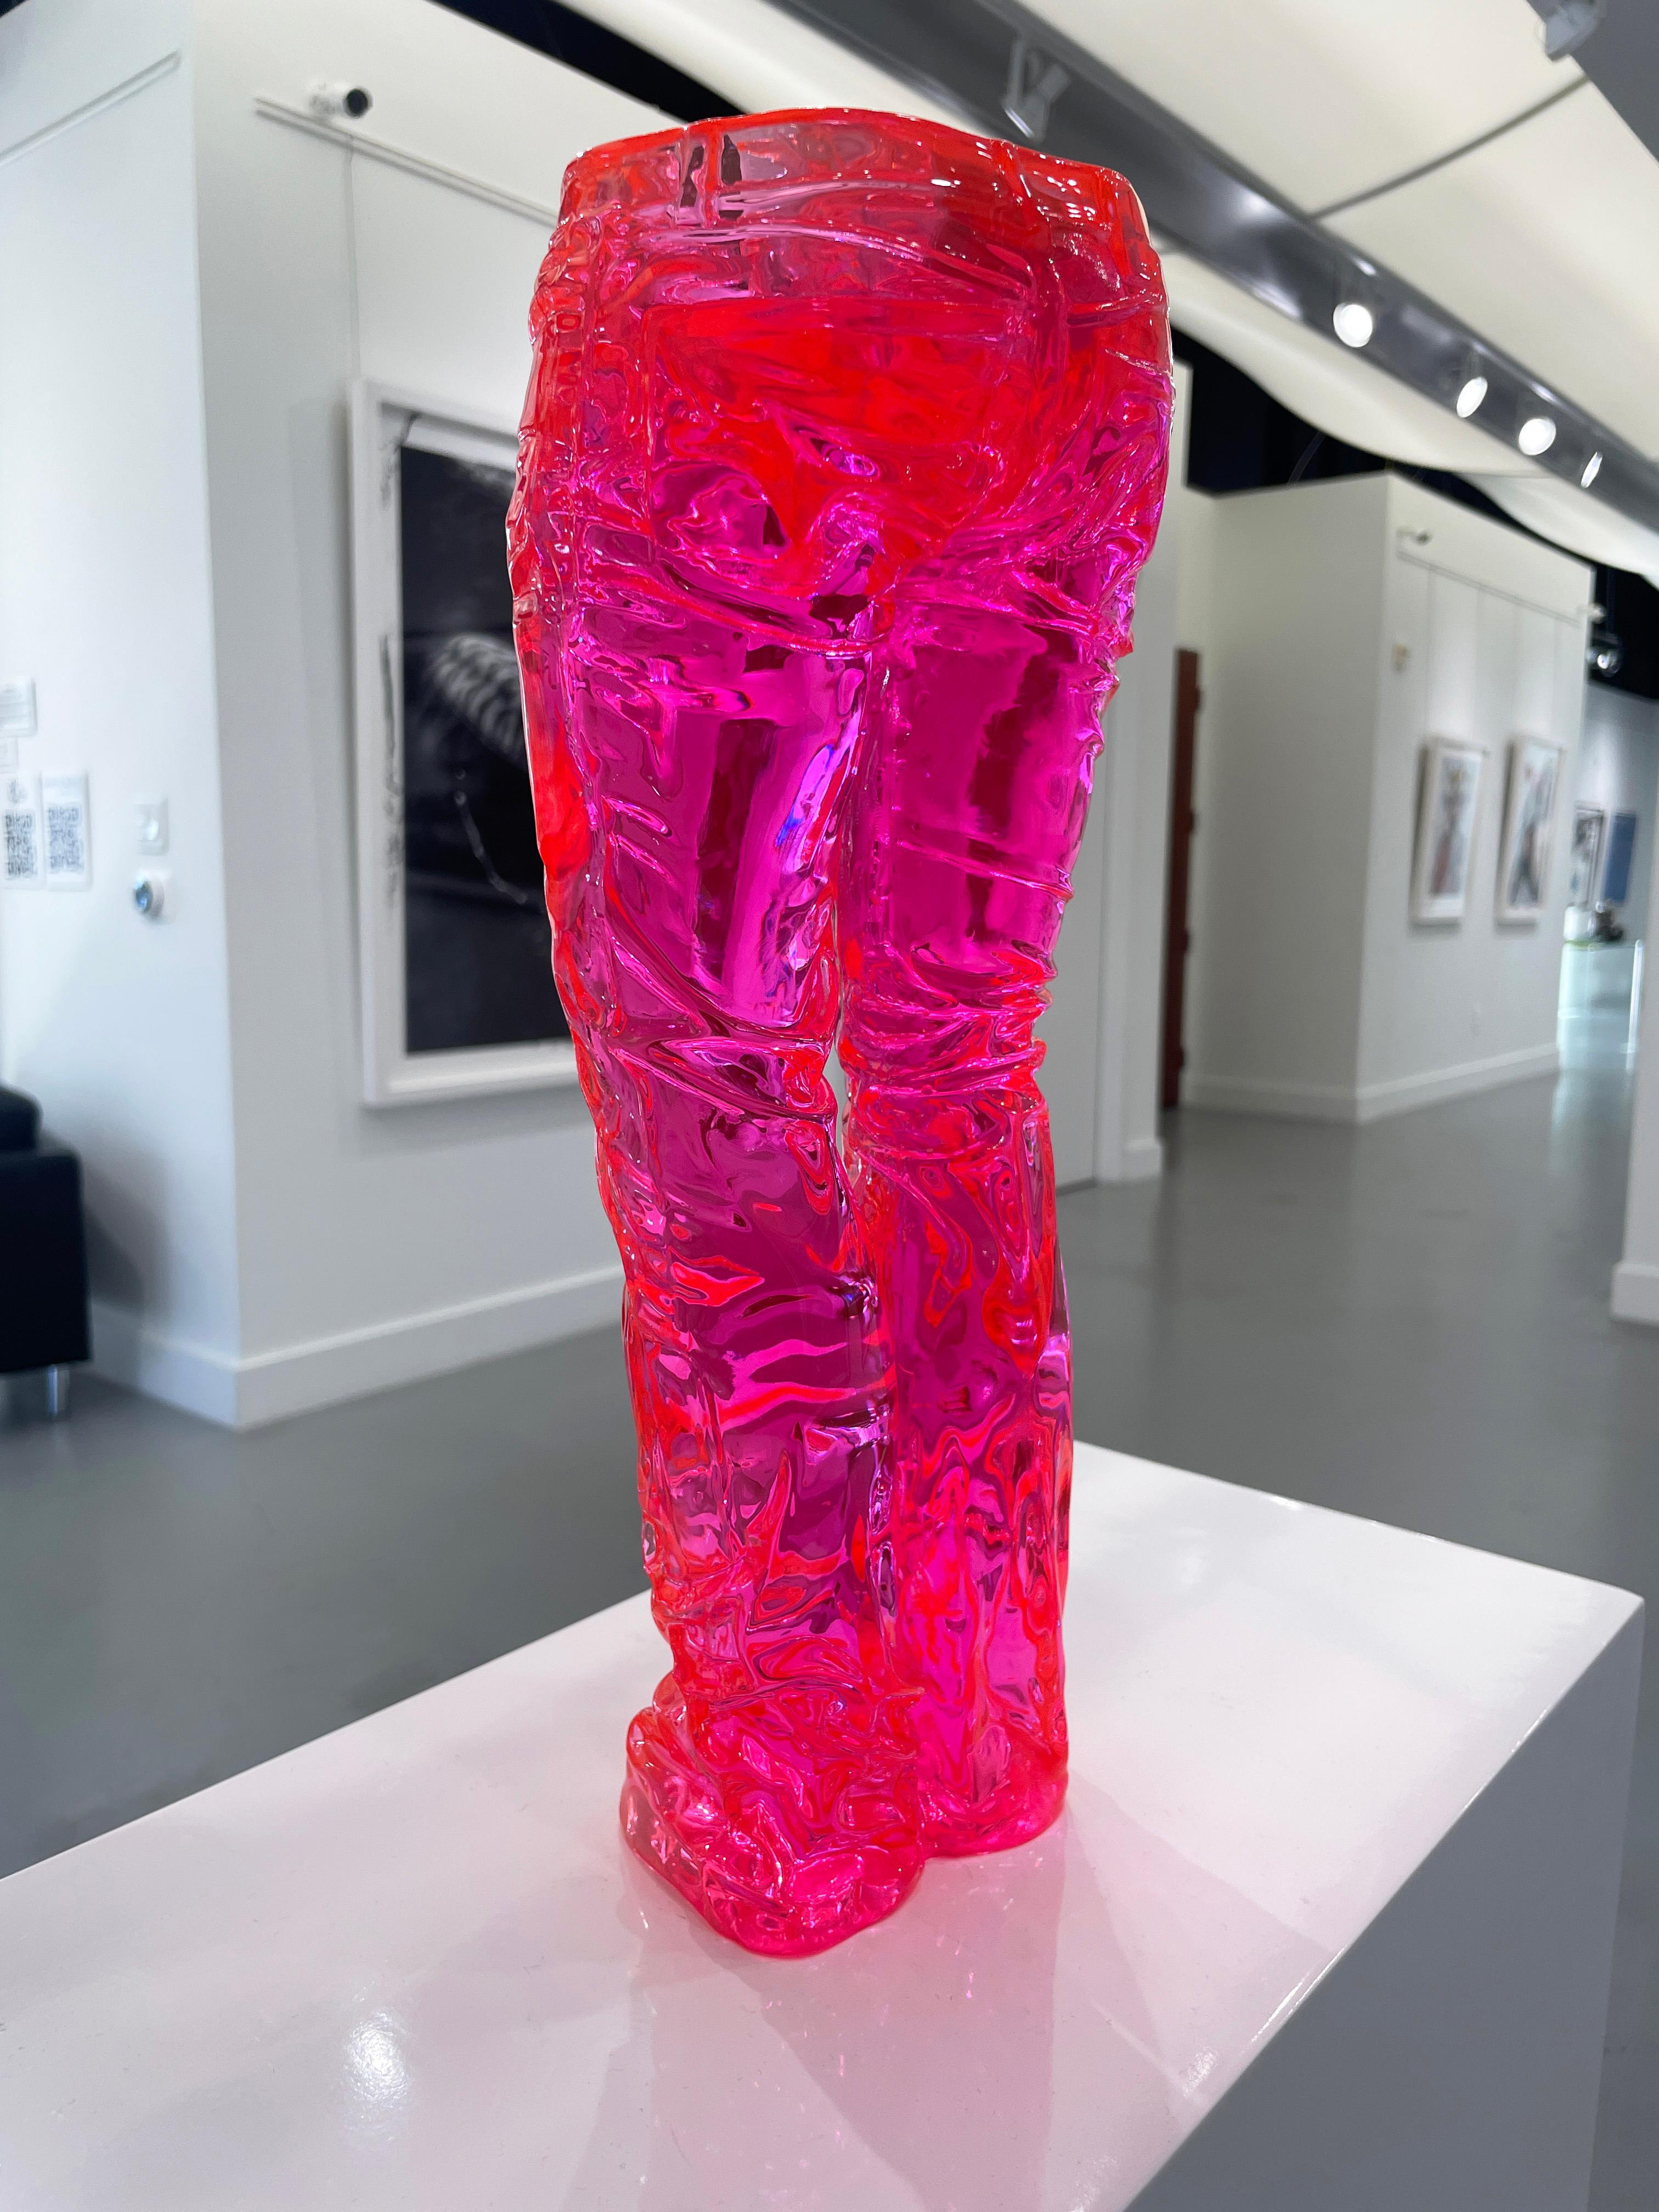 Wild Denim Crystal Clear Pink - Pop Art Sculpture by Richard Orlinski